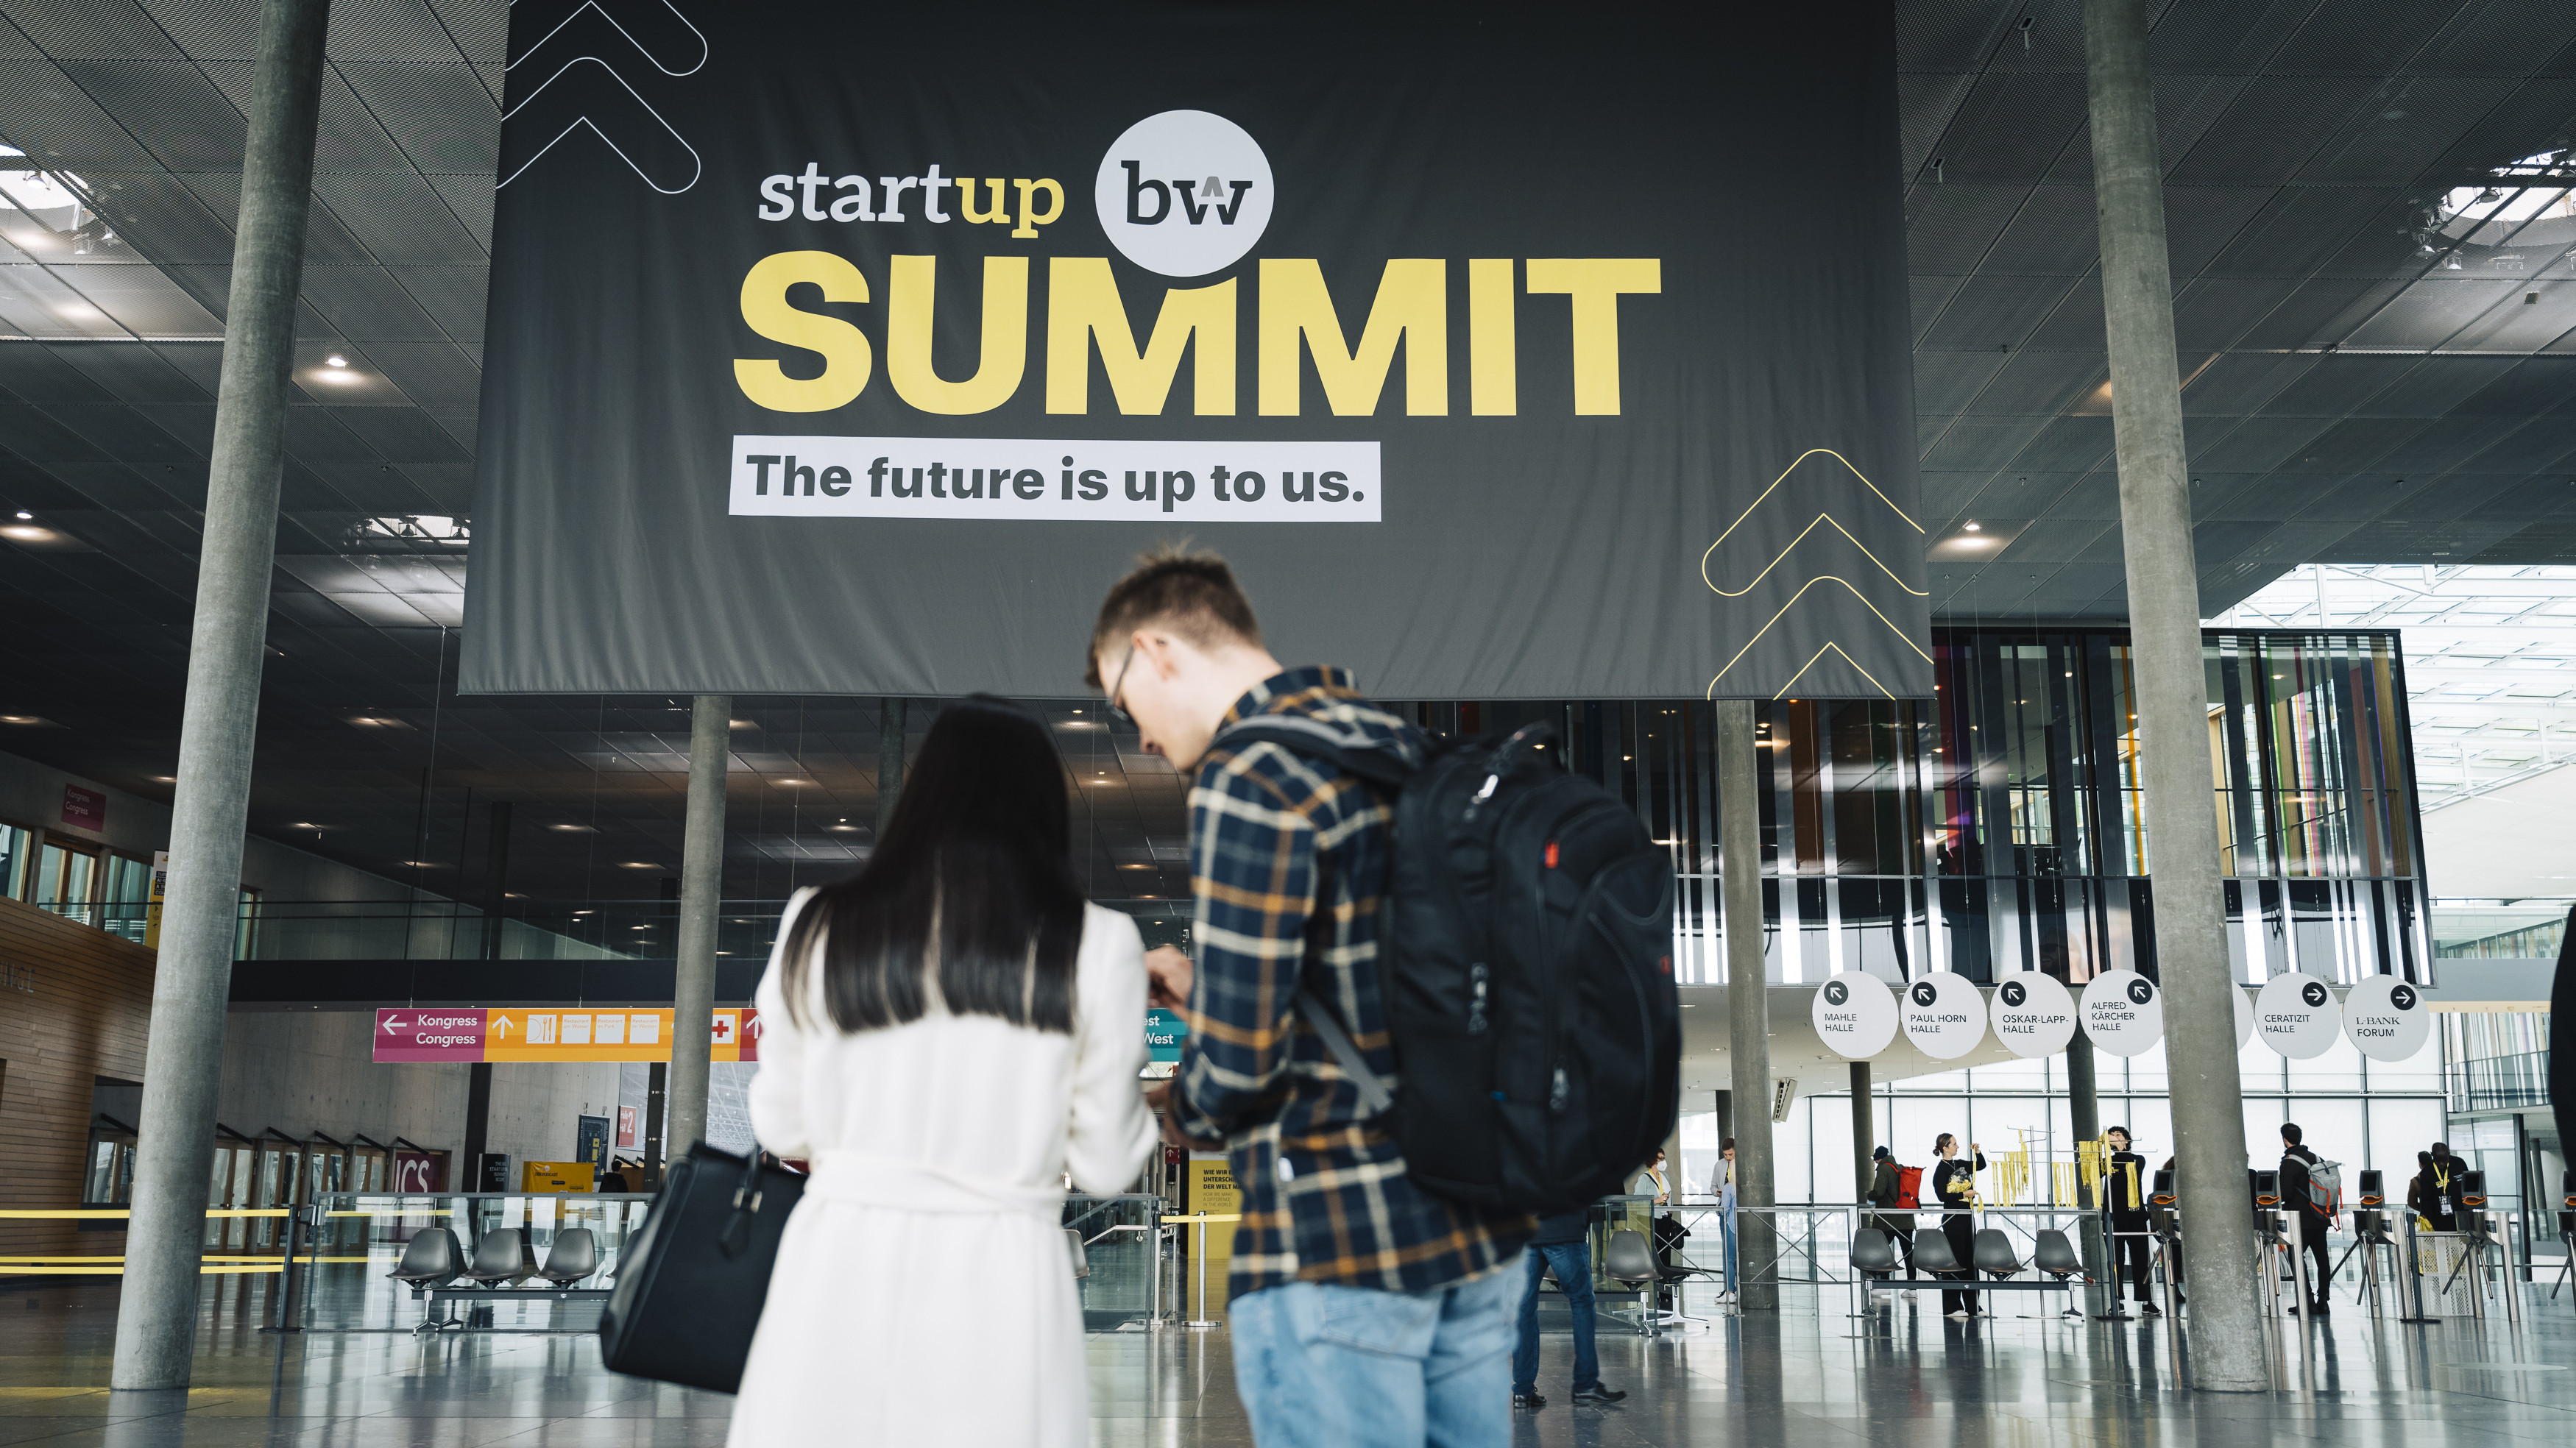 Start-up BW Summit Plakat im Eingang der Messe